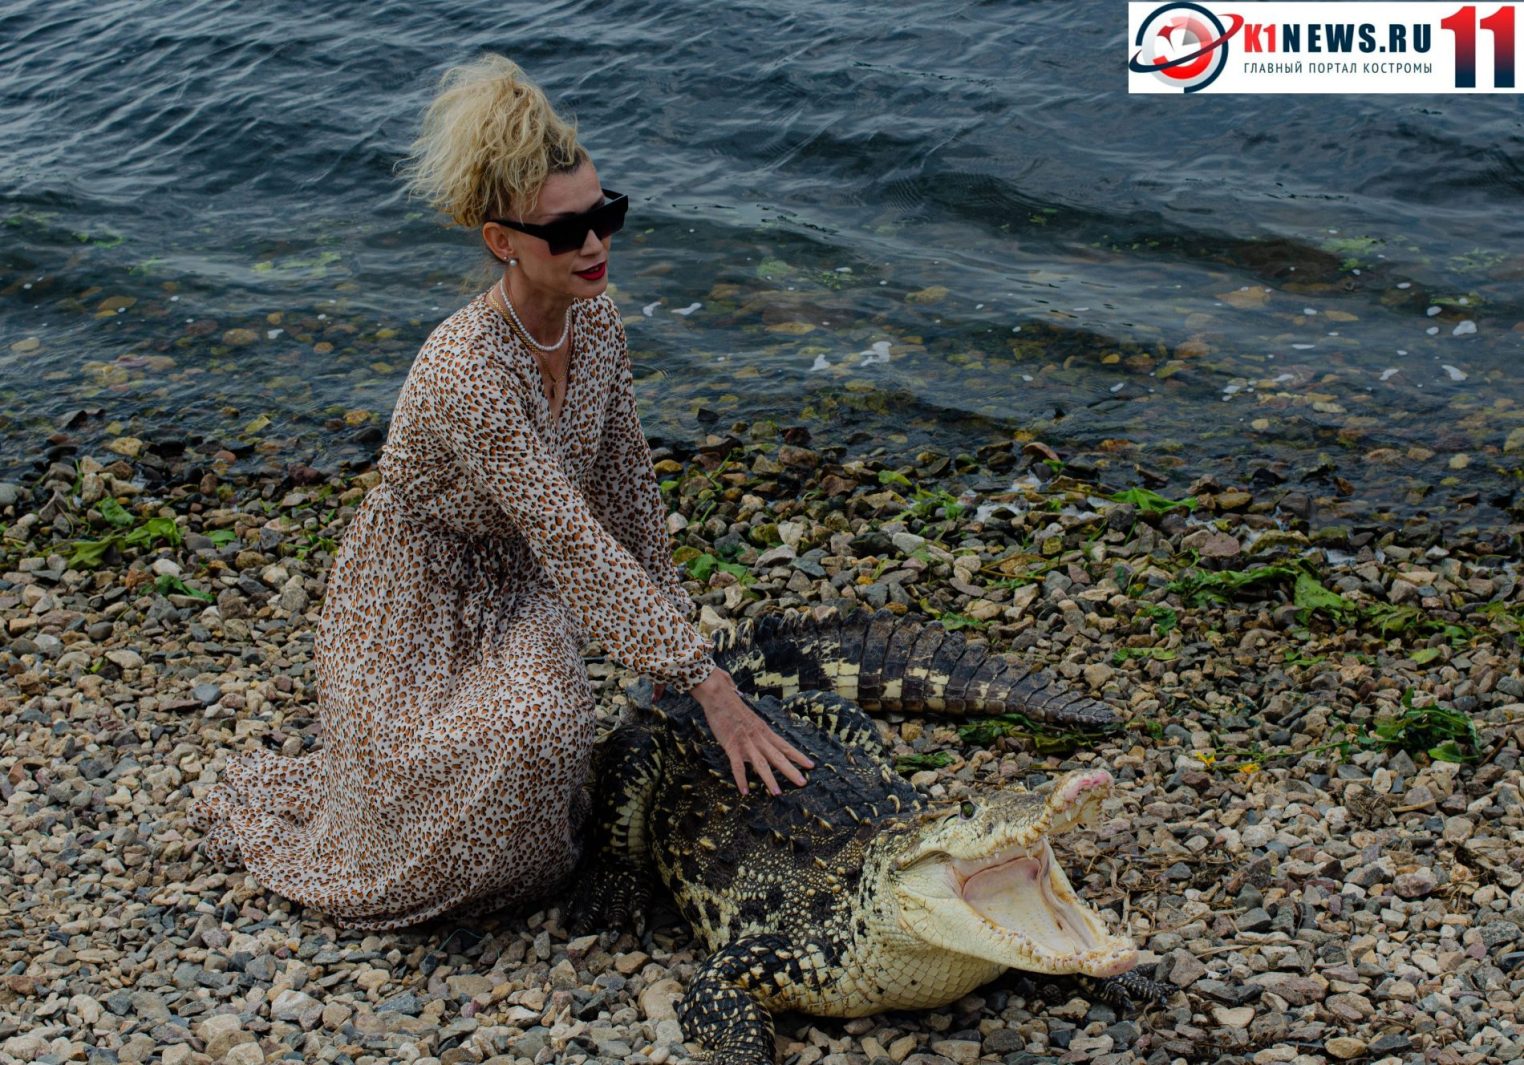 На набережной костромичи встретили живого крокодила